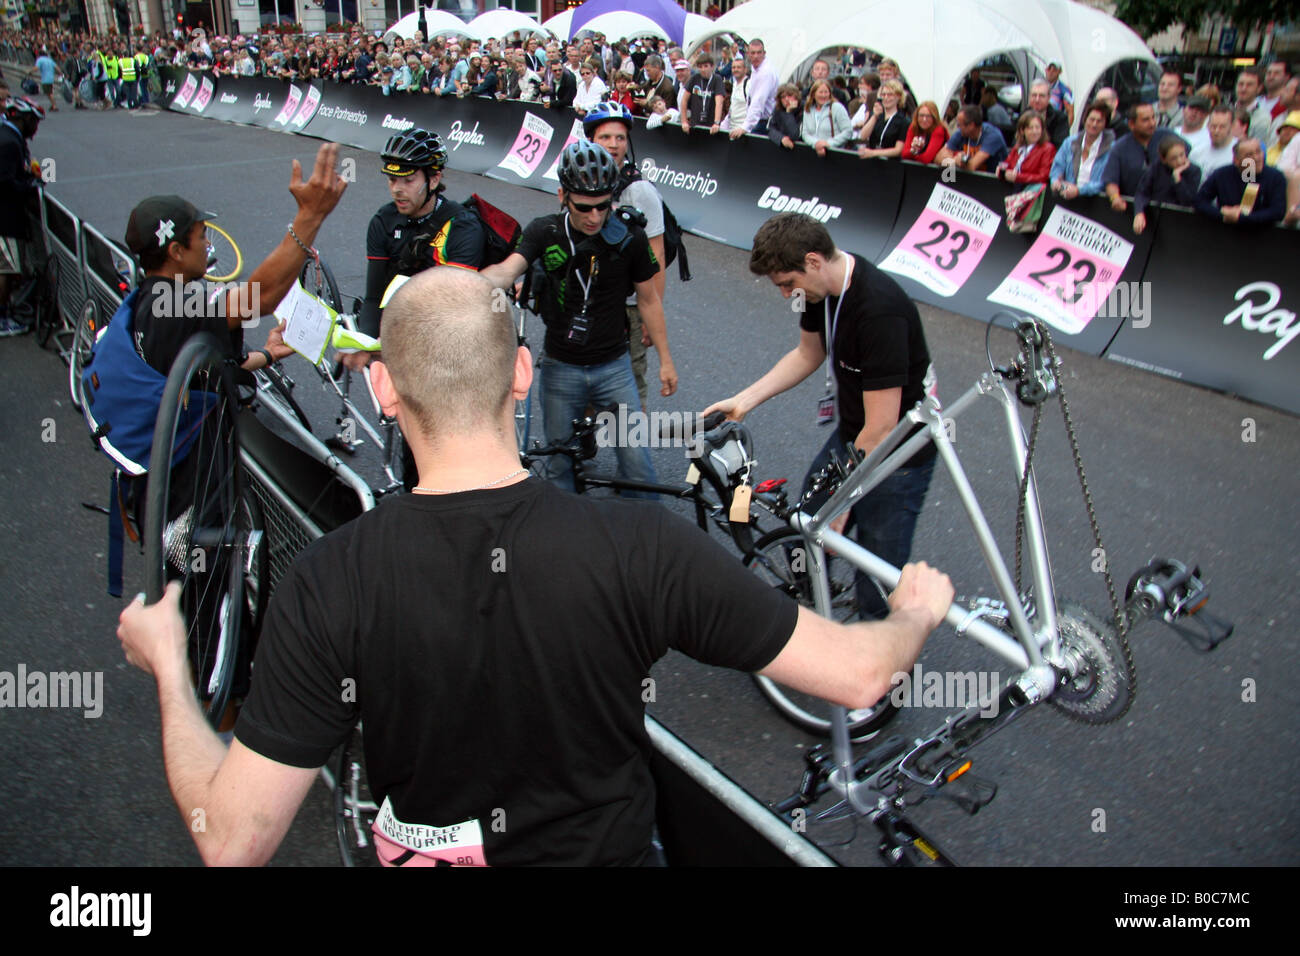 Une certaine quantité de chaos lors d'une course cycliste pour les coursiers à vélo Banque D'Images